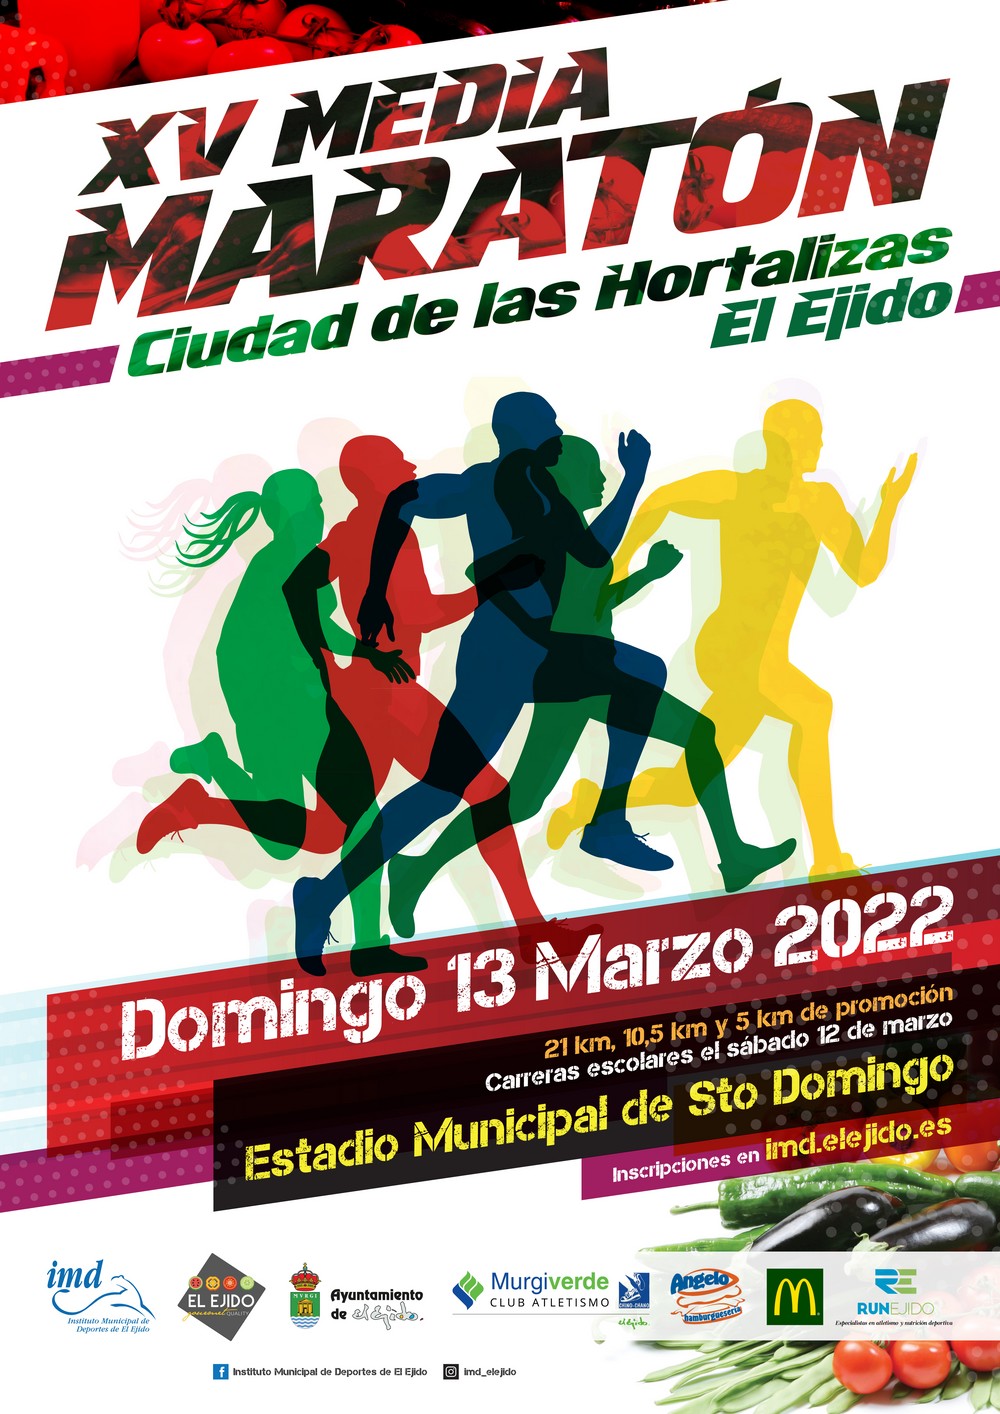 Abierto el plazo de inscripción para participar en la XV Media Maratón ‘Ciudad de las Hortalizas’ que se disputará el próximo 13 de marzo